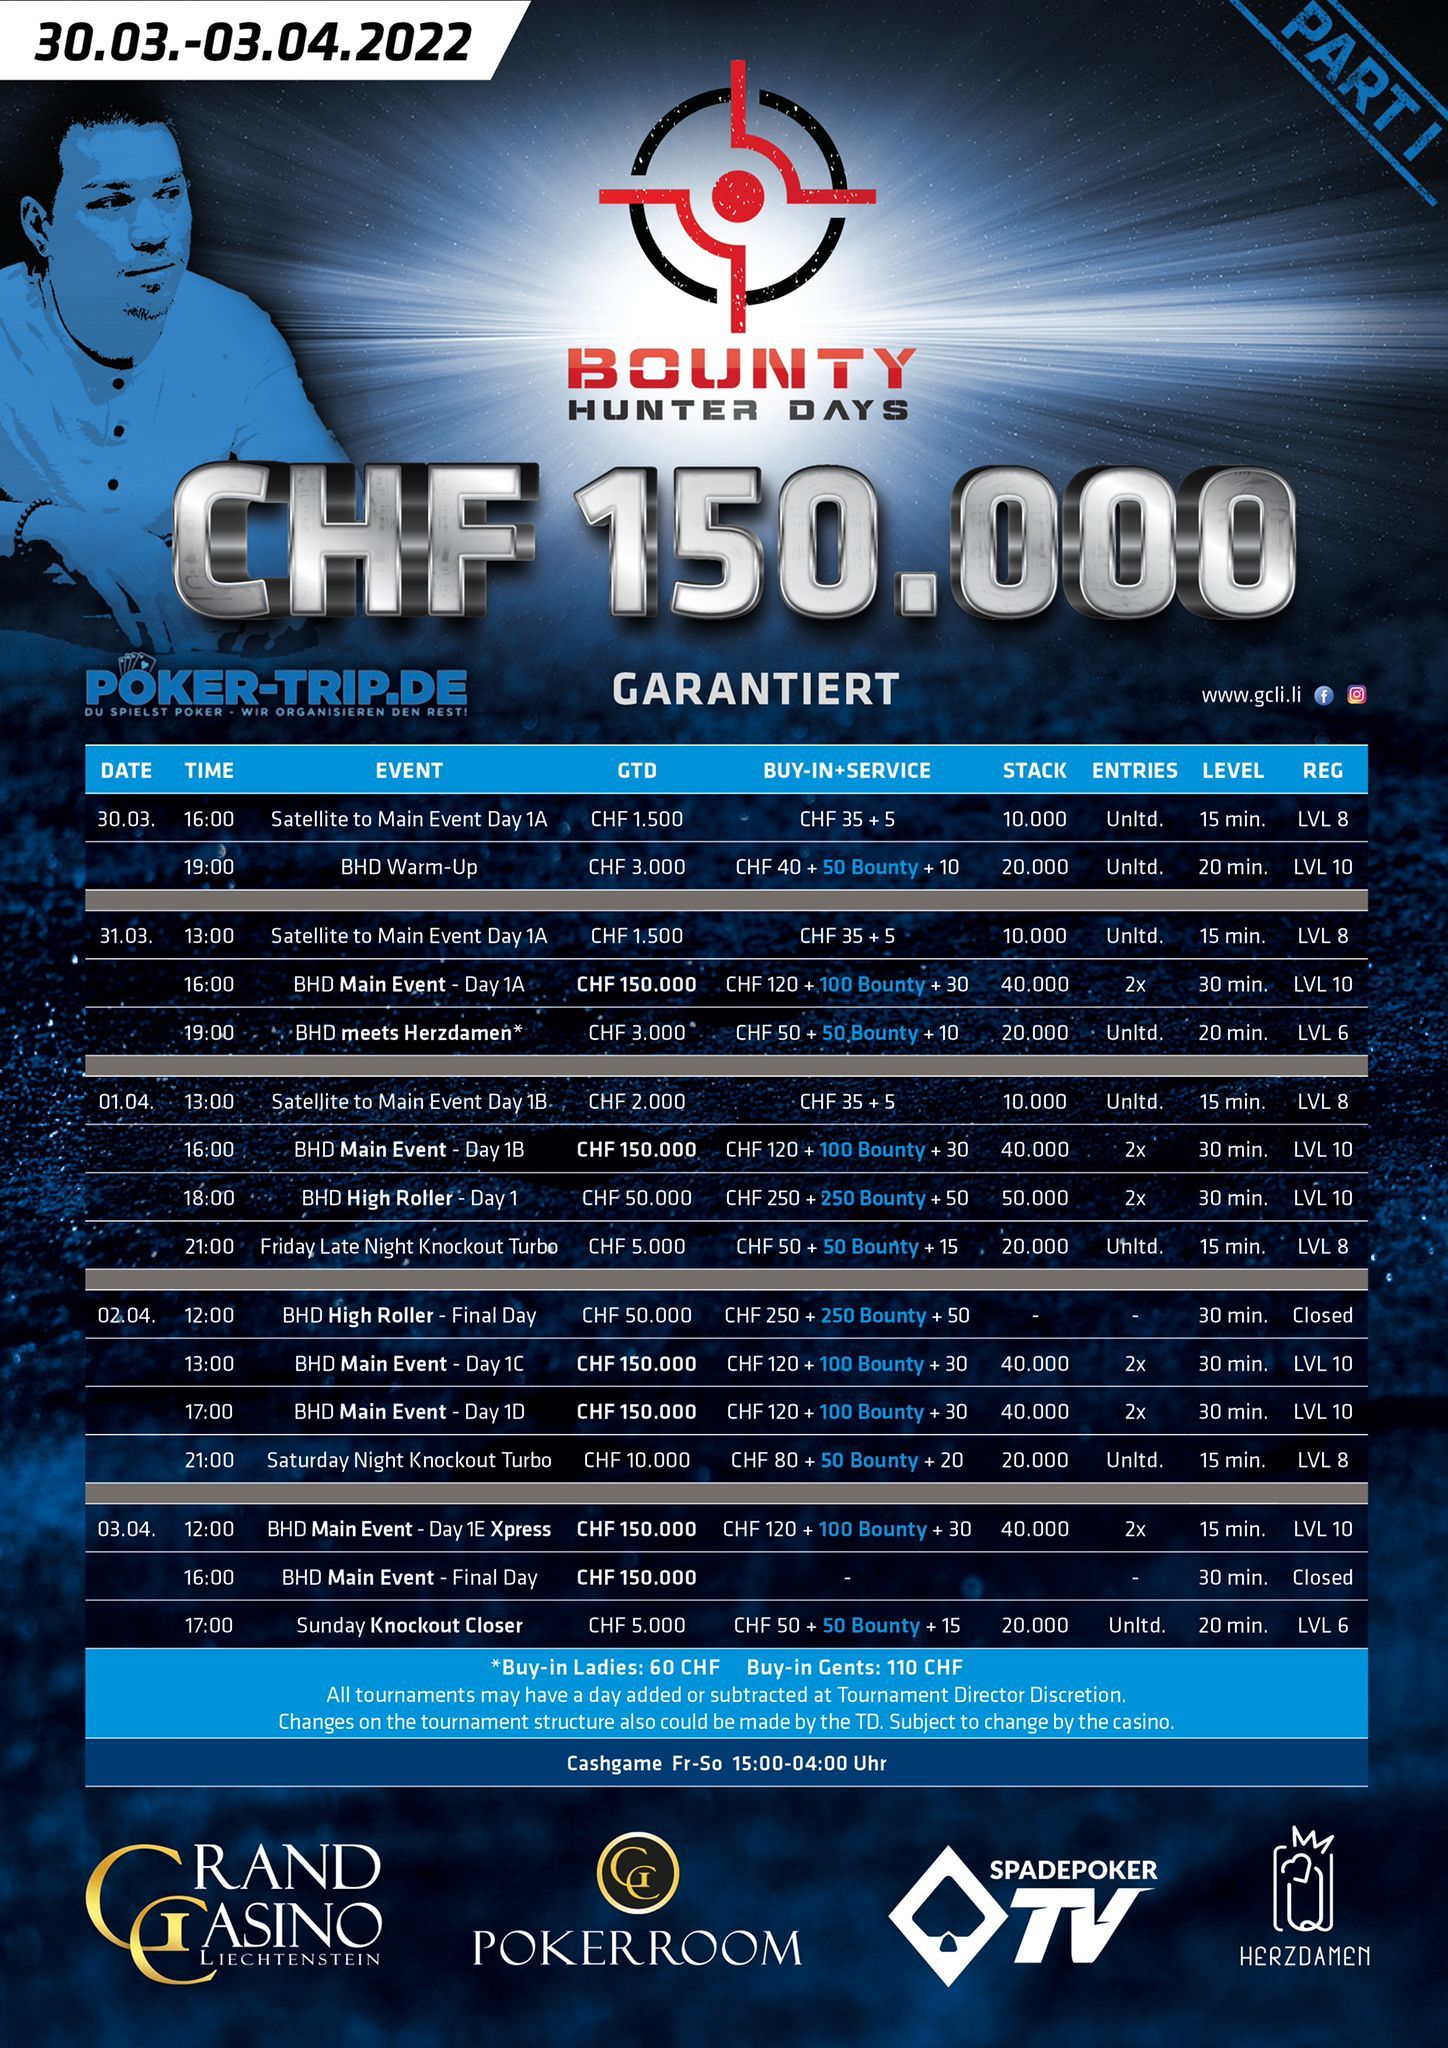 Schedule zu den Bounty Hunter Days im Grand Casino Liechtenstein vom 14.10. - 17.10.2021